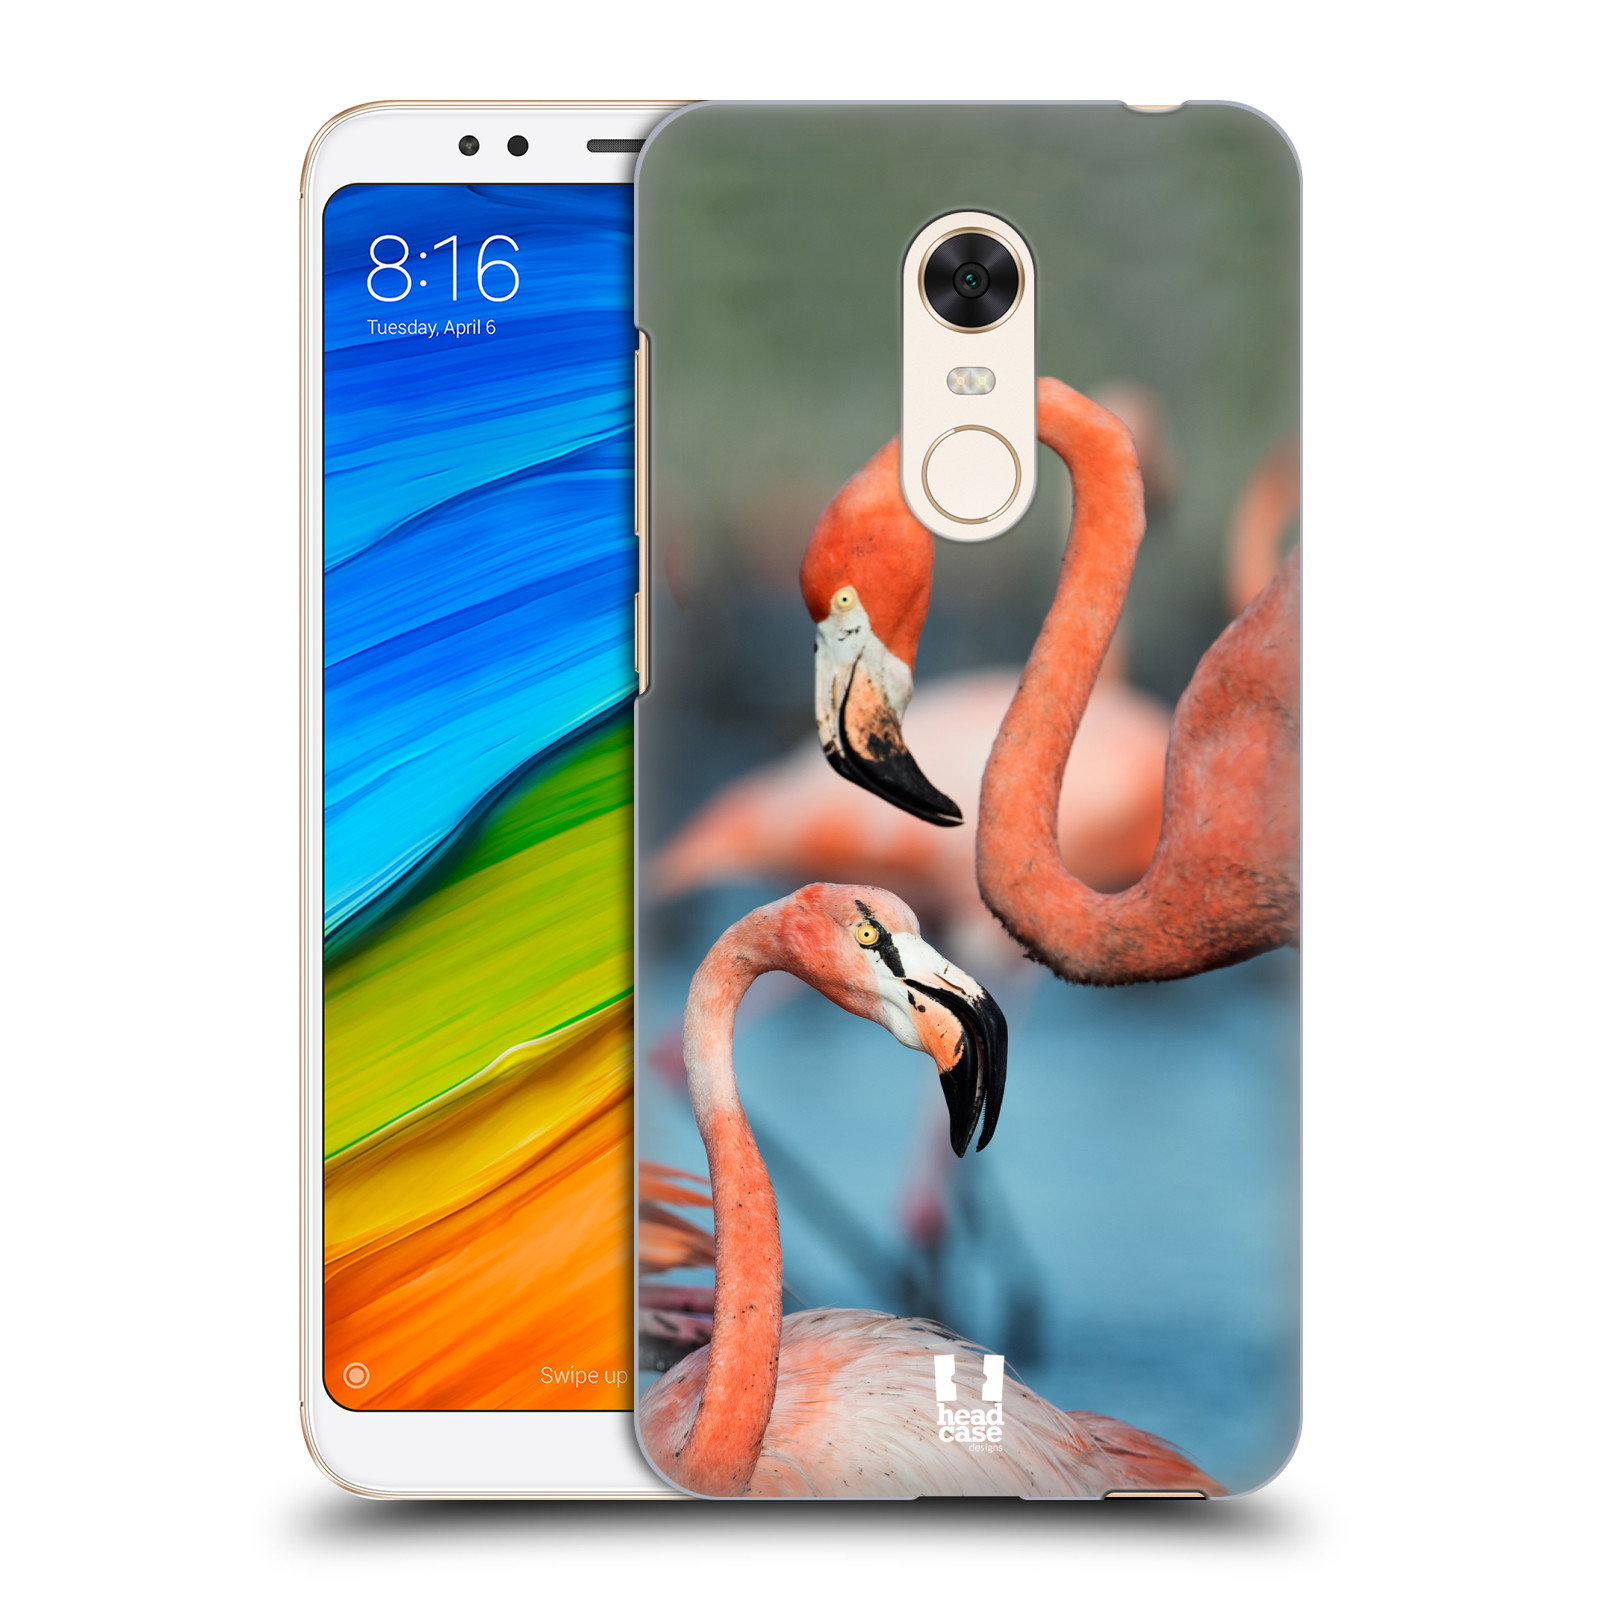  HEAD CASE plastový obal na mobil Xiaomi Redmi 5 PLUS vzor slavná zvířata foto plameňák